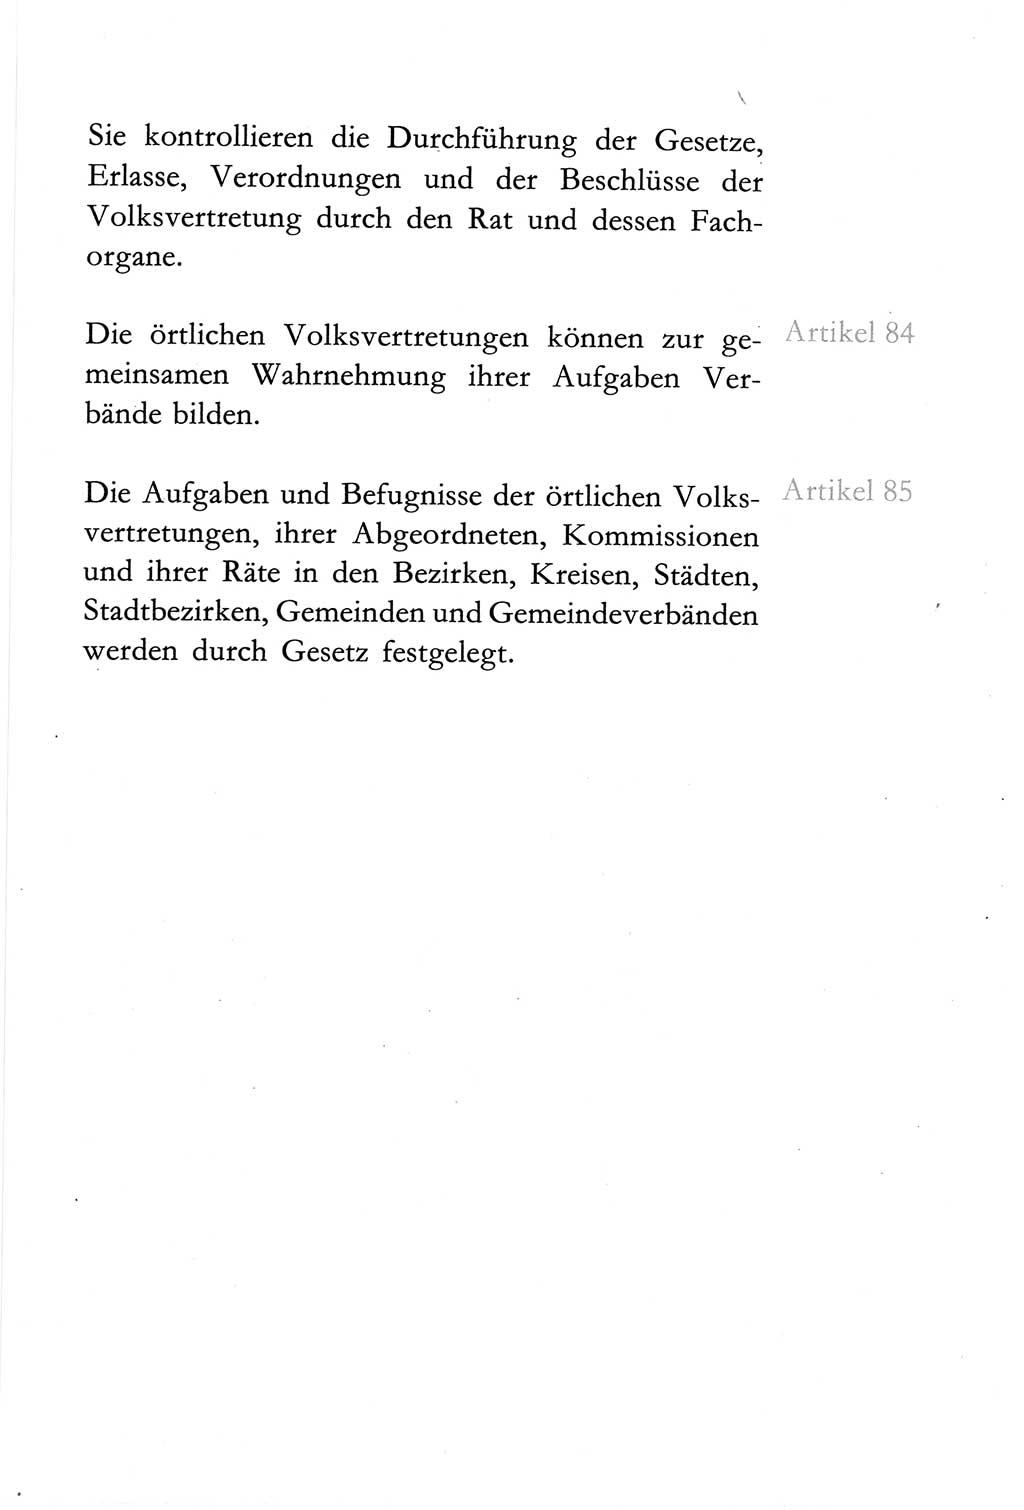 Verfassung der Deutschen Demokratischen Republik (DDR) vom 6. April 1968, Seite 63 (Verf. DDR 1968, S. 63)